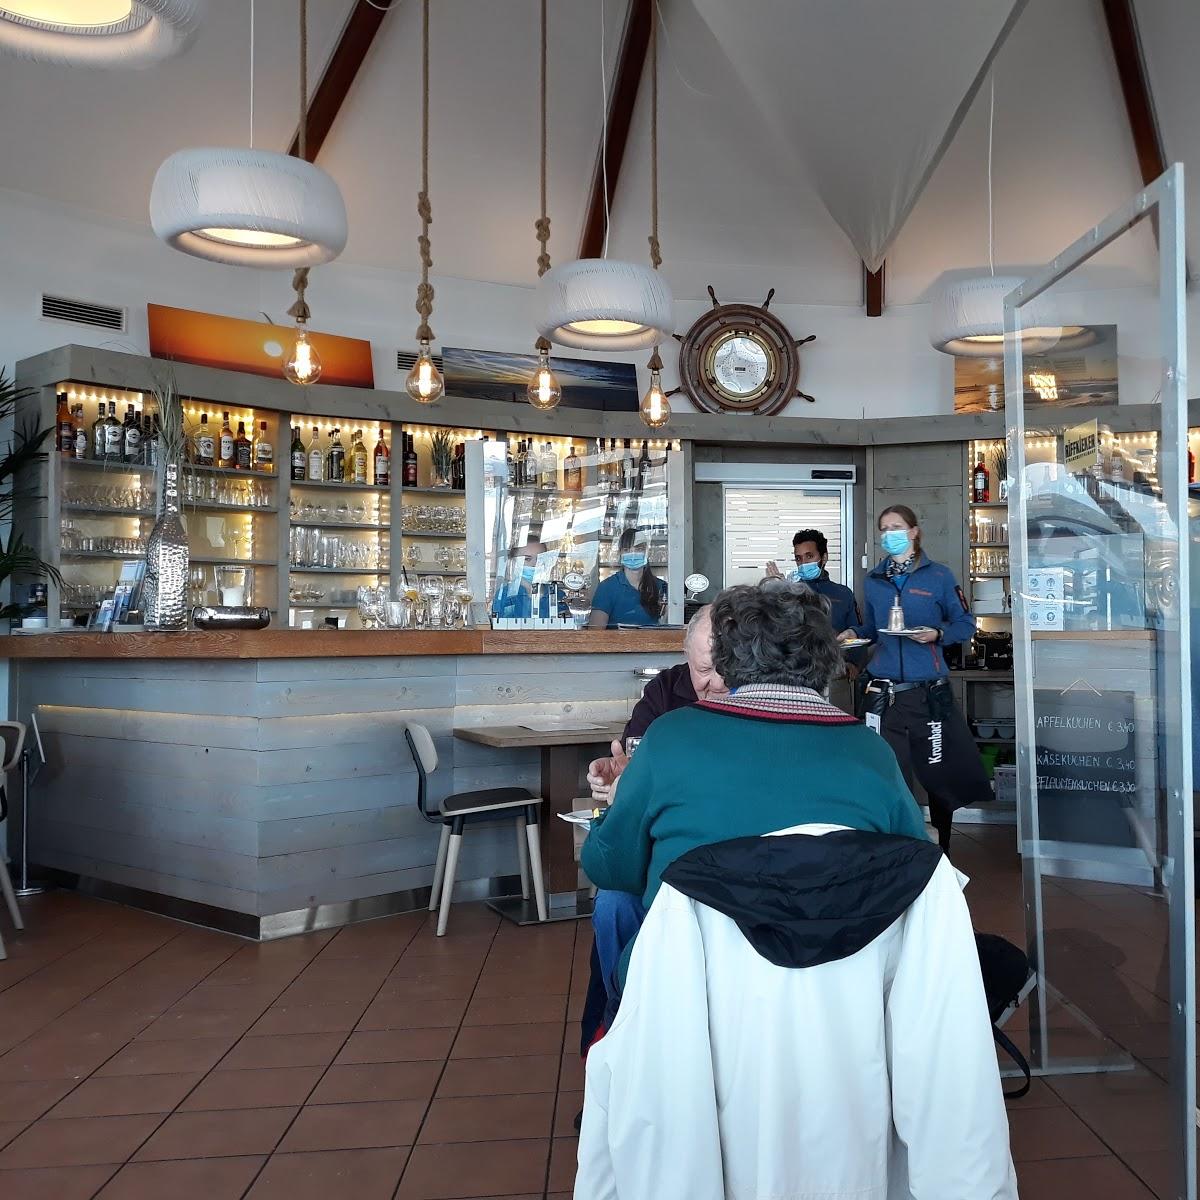 Restaurant "Strandrestaurant Riffkieker" in Norderney